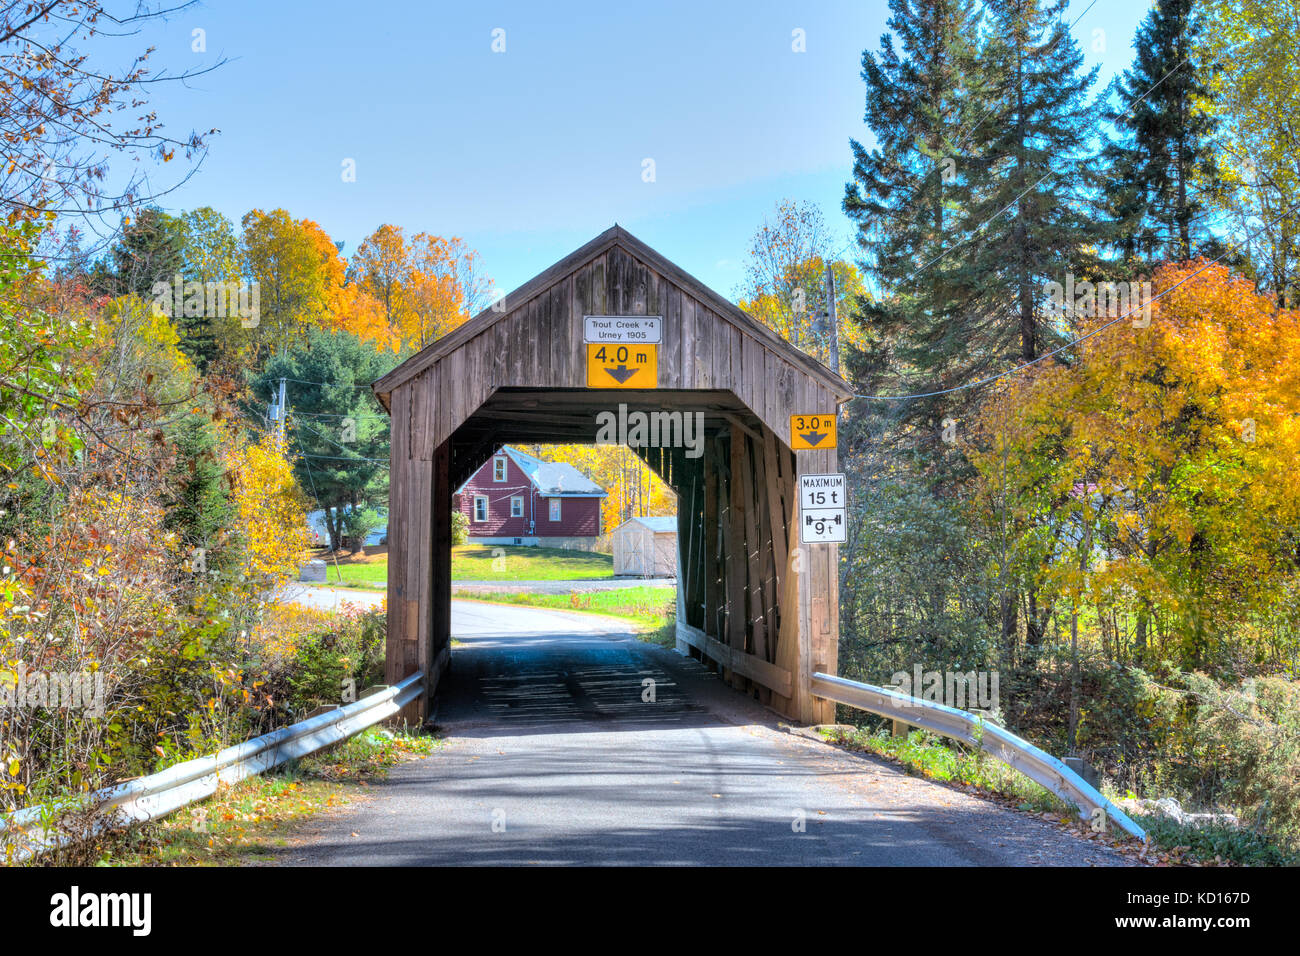 Trout Creek # 4 pont couvert, urney, Nouveau-Brunswick, Canada Banque D'Images